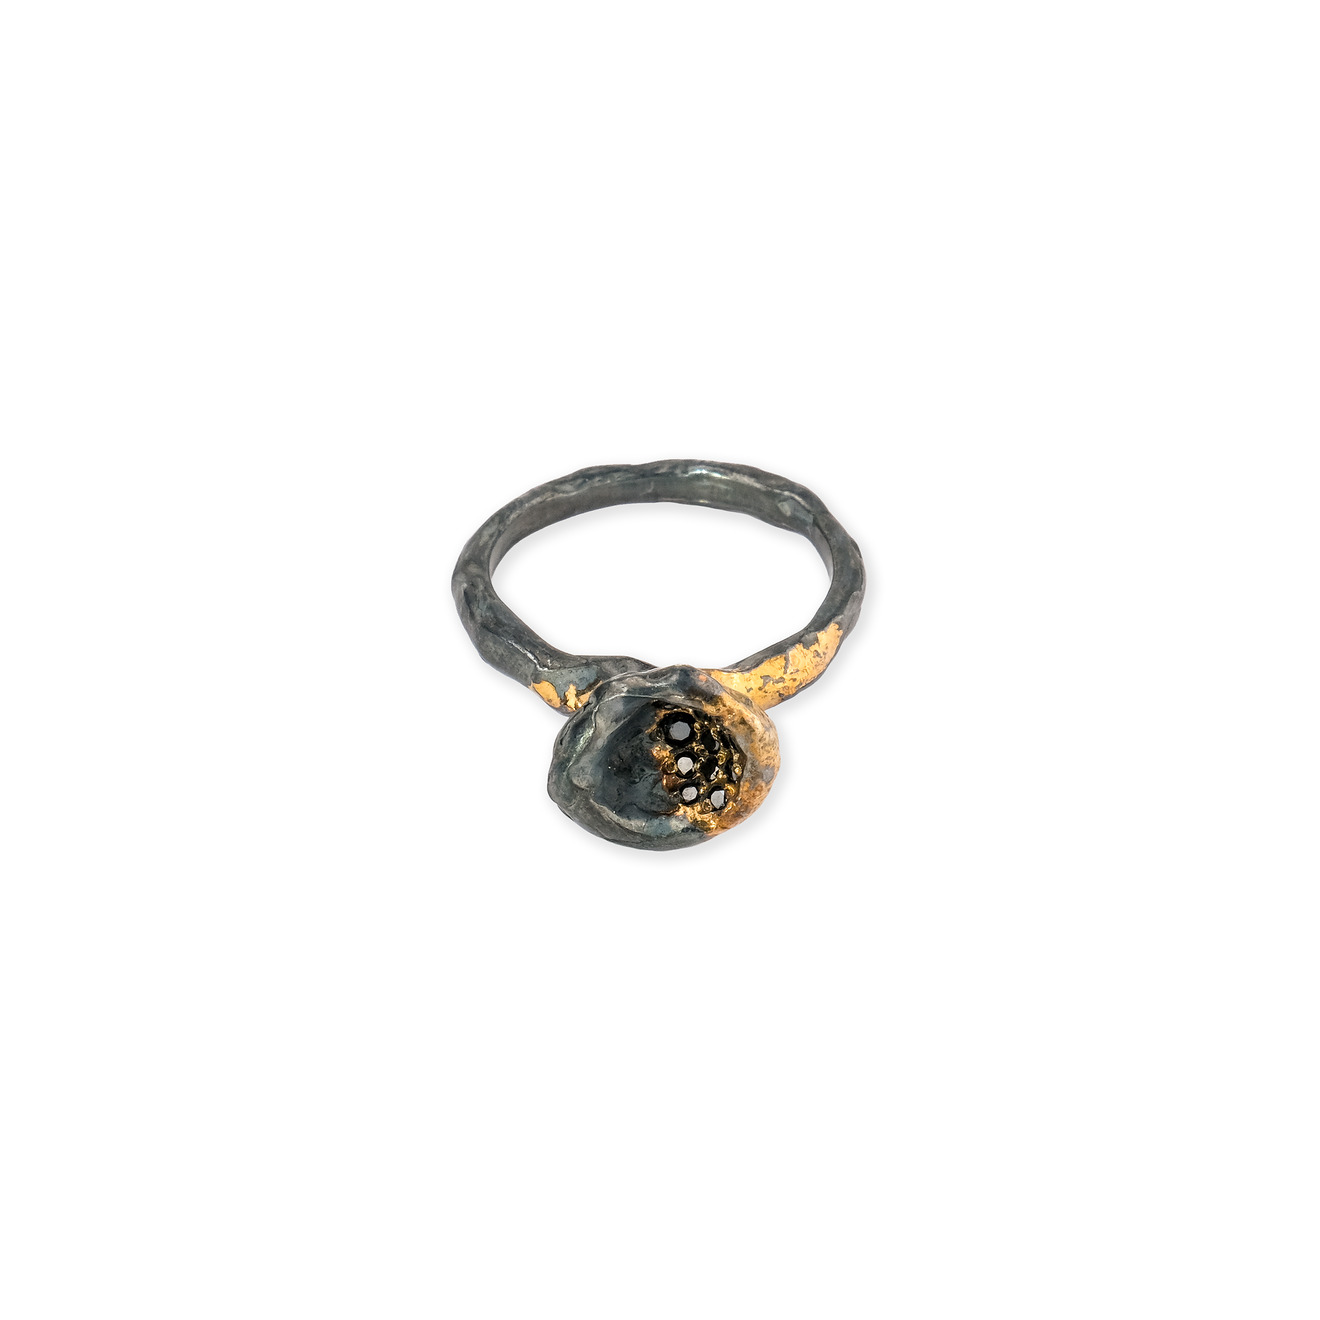 Kintsugi Jewelry Кольцо Soul2 из серебра с позолотой и бриллиантами liya кольцо с позолотой и вставками из эмали